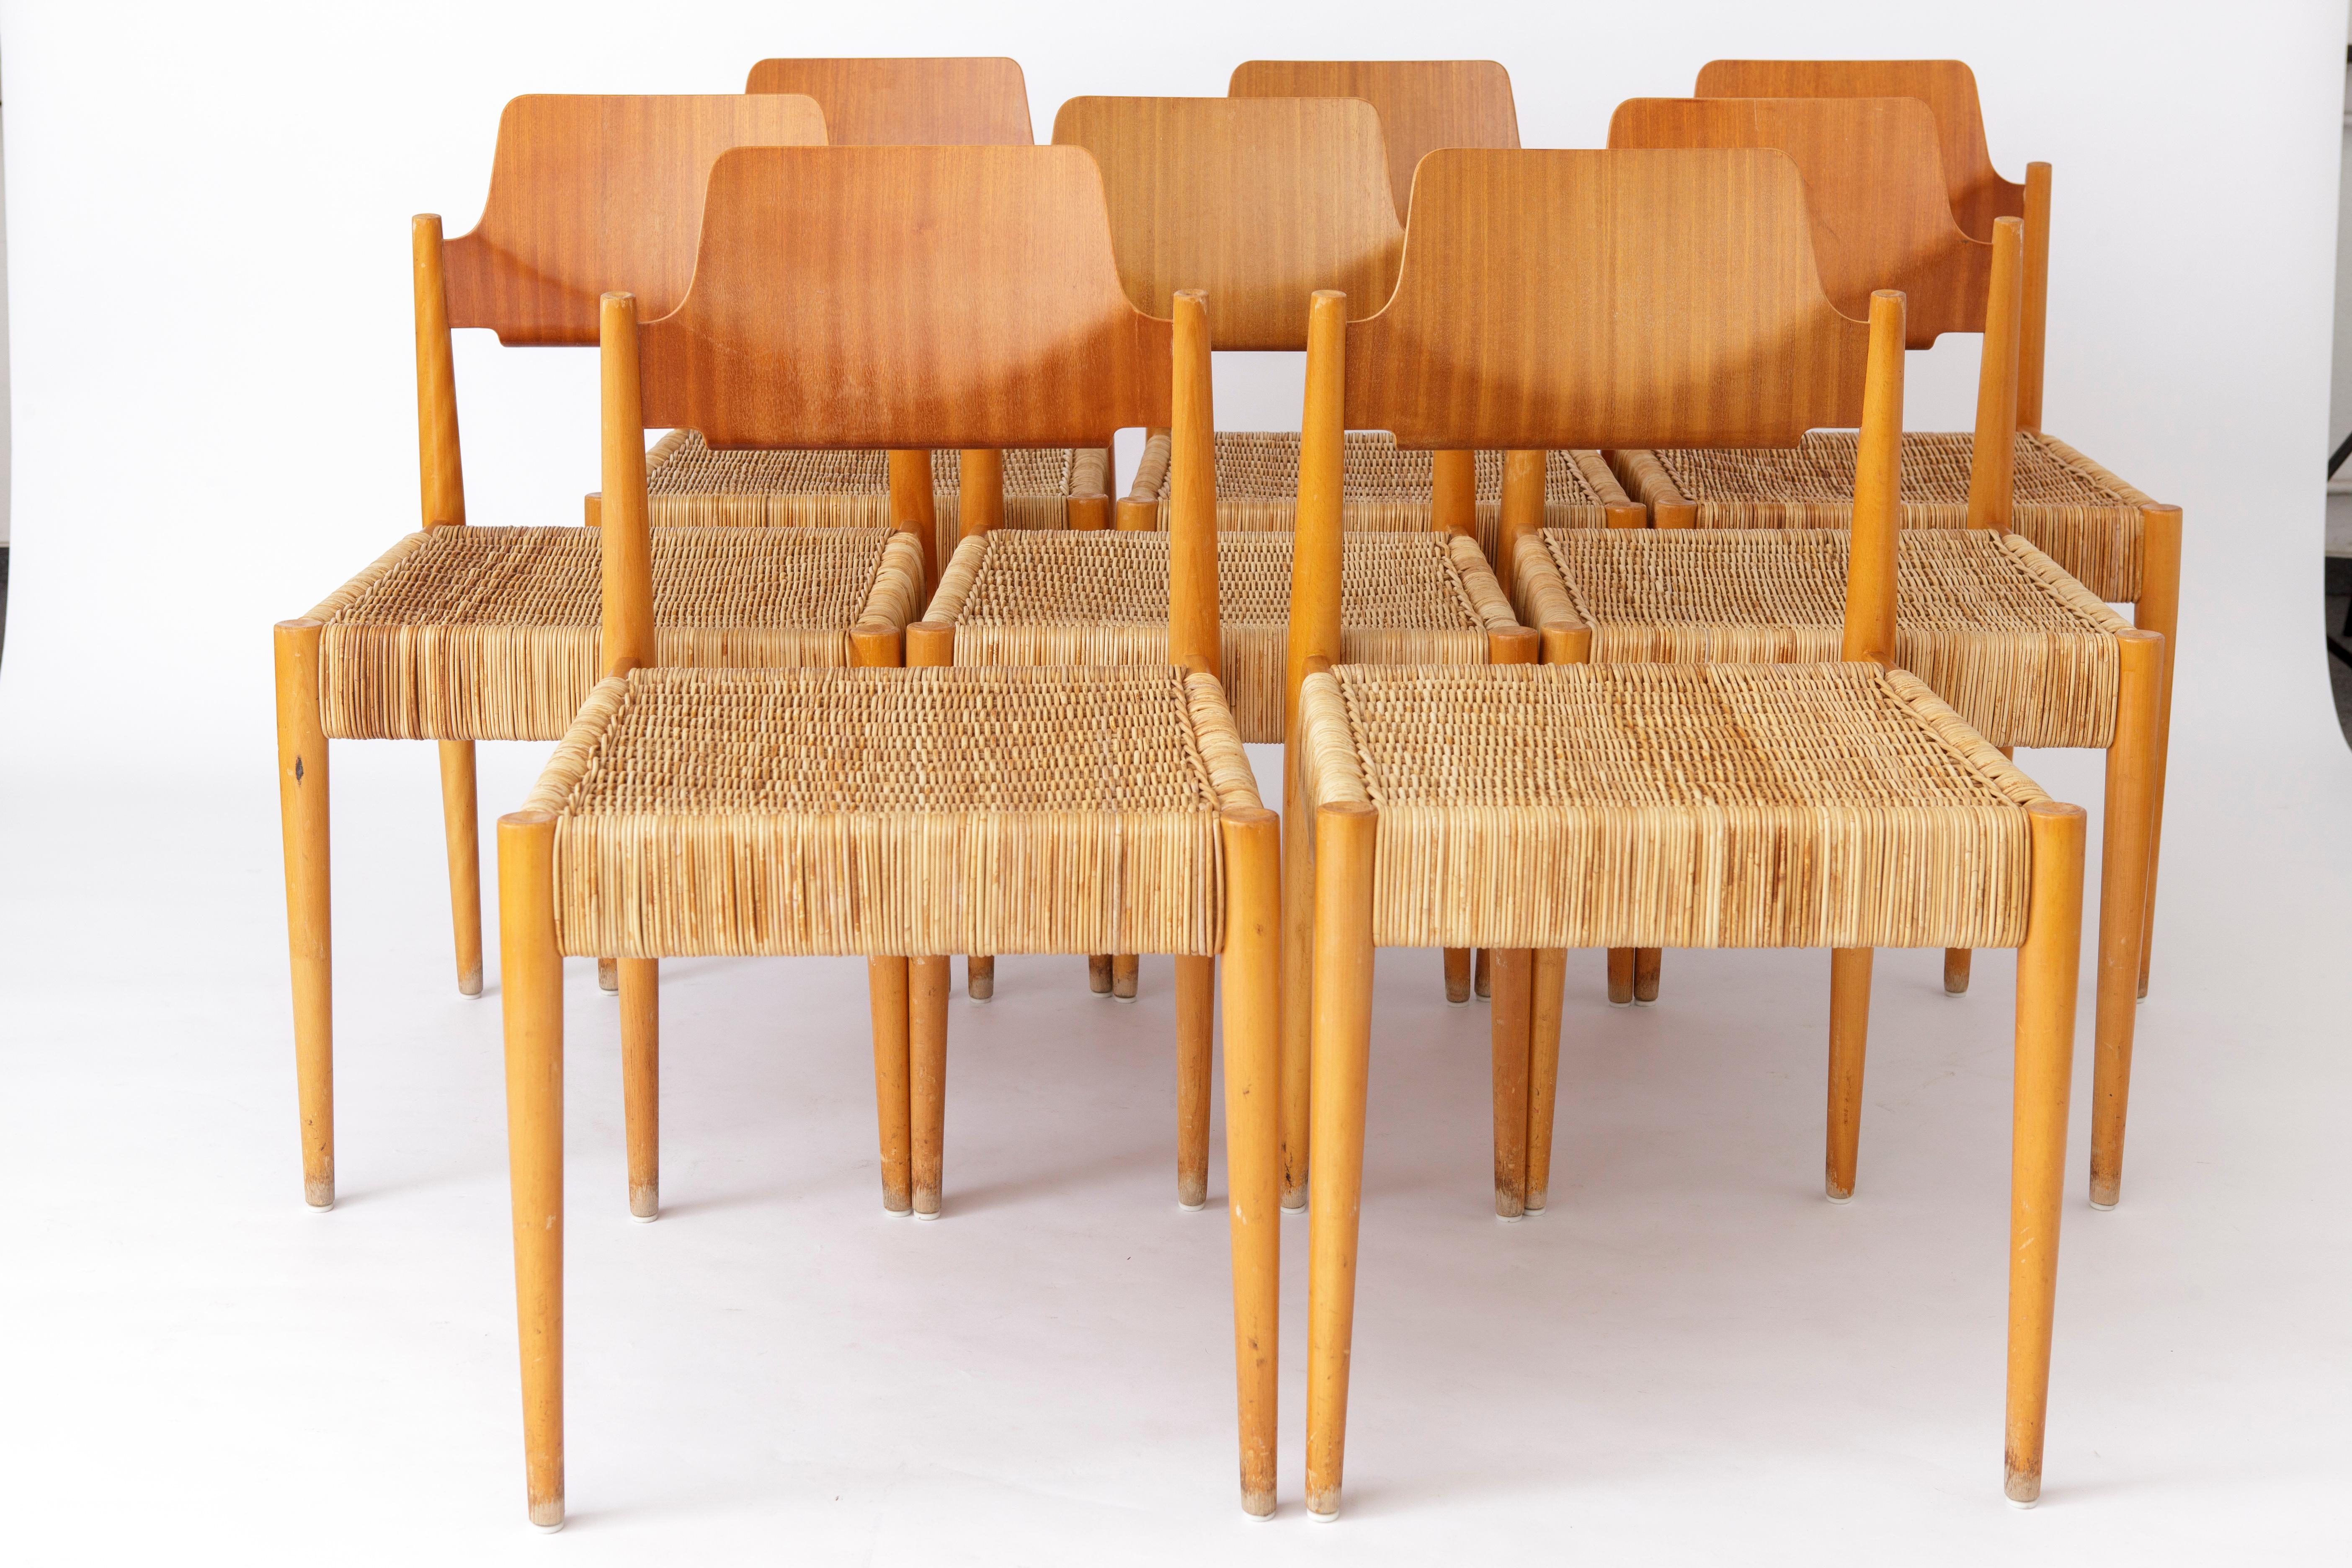 8 einzigartige Stühle vom deutschen Bauhaus-Designer Egon Eiermann für den Hersteller Wilde + Spieth. 
Modell: SE19 von 1953. 
Die Stühle wurden in einer alten Kirche verwendet und haben hinten ein Regal für ein Gesangbuch. 
Buchenholzrahmen in